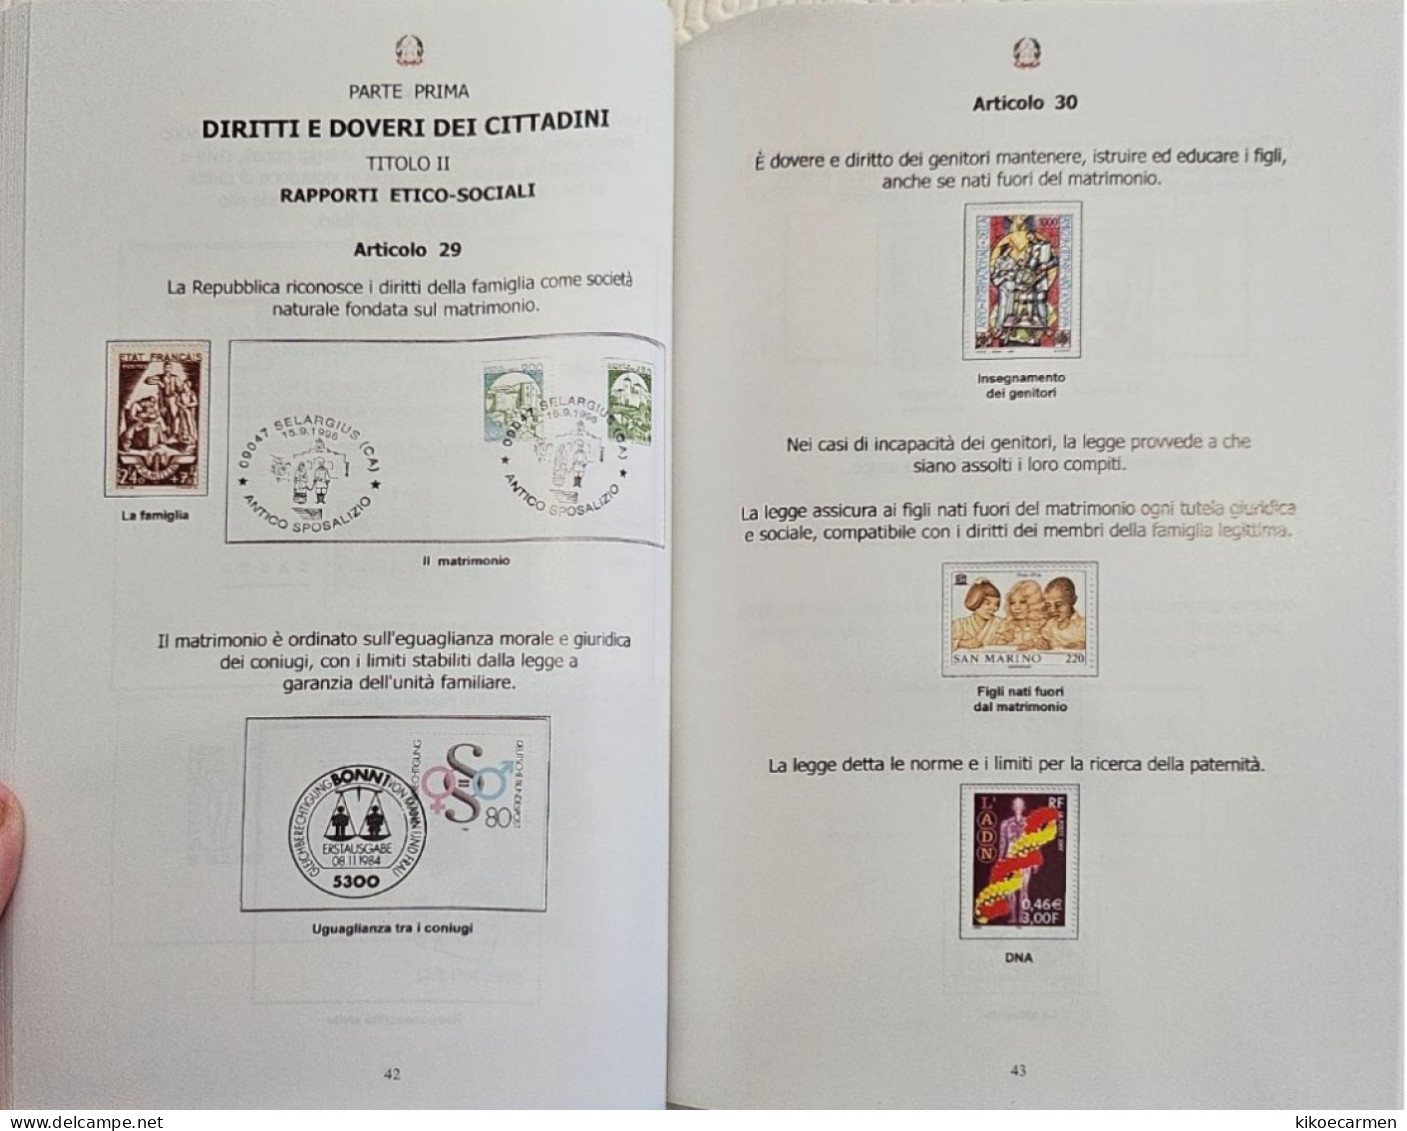 Costituzione Italiana Attraverso La Filatelia CIFT Vastophil 2014 LAW Thematic Philately Book 158 Pages Coloured - Temas